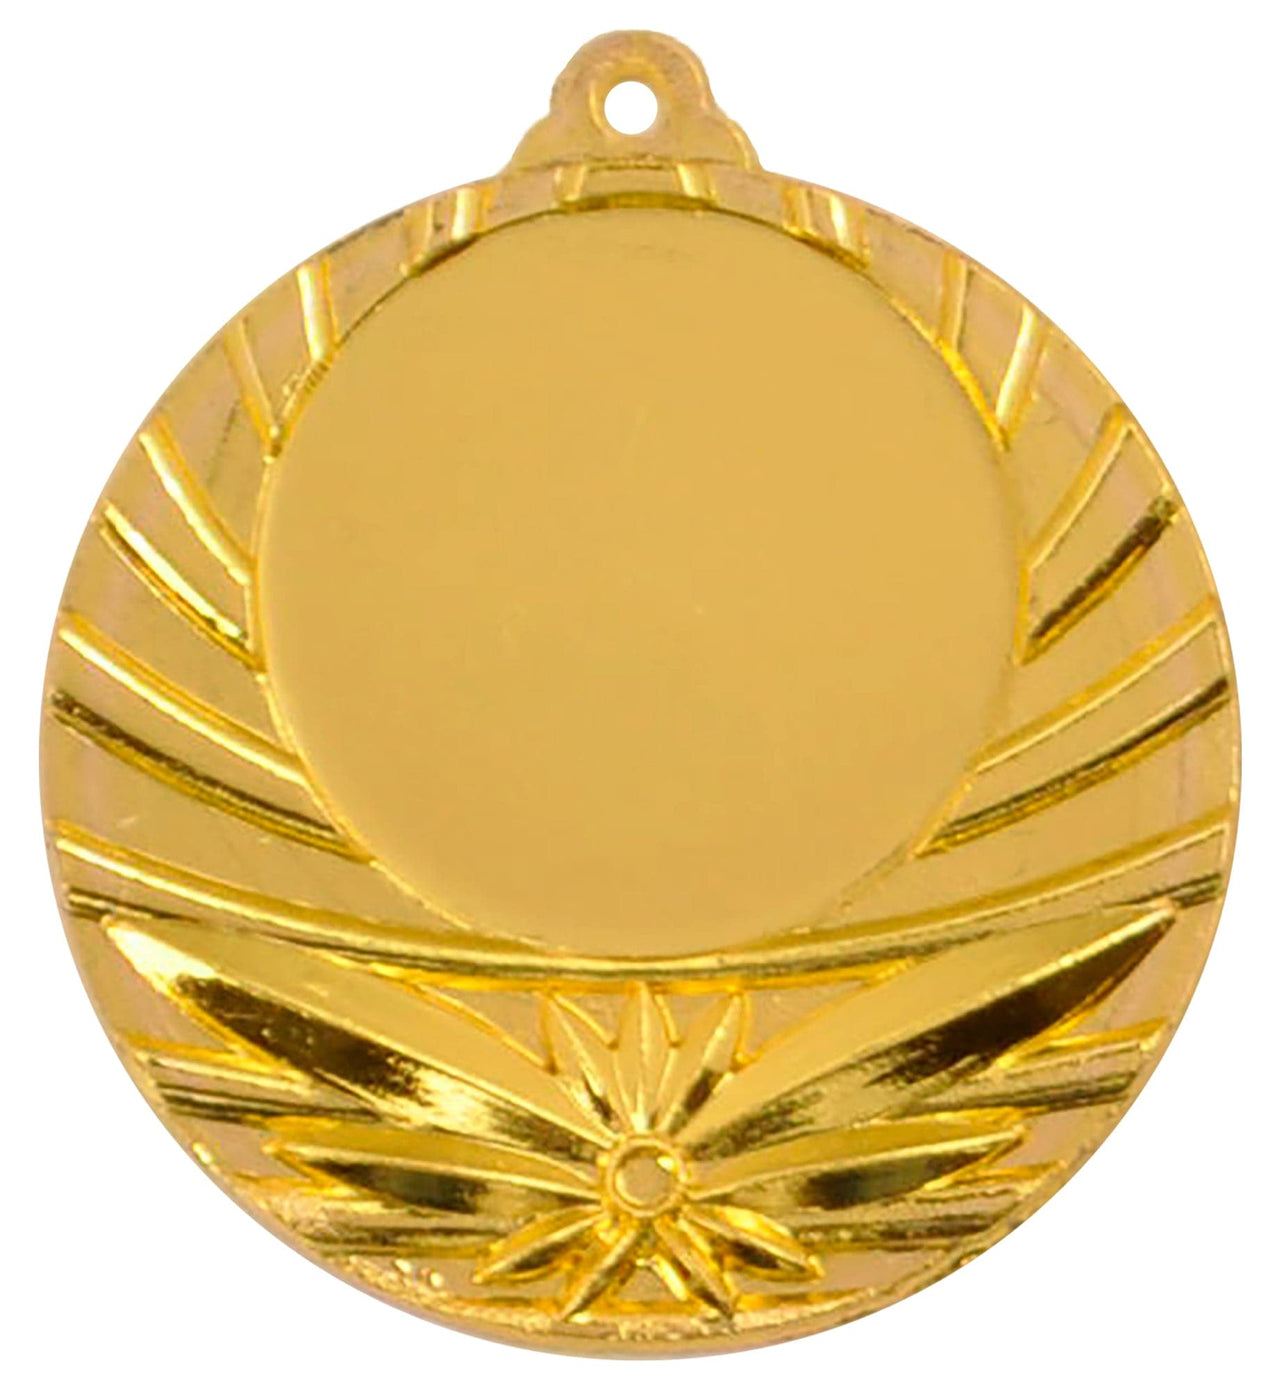 Medaillen Göttingen 40 mm PK79314g-E25 Goldmedaille mit einem Sternendesign und einem runden Zentrum zur individuellen Gestaltung, isoliert auf weißem Hintergrund. Diese Auszeichnung ist ideal für Wettbewerbe und feierliche Anlässe.